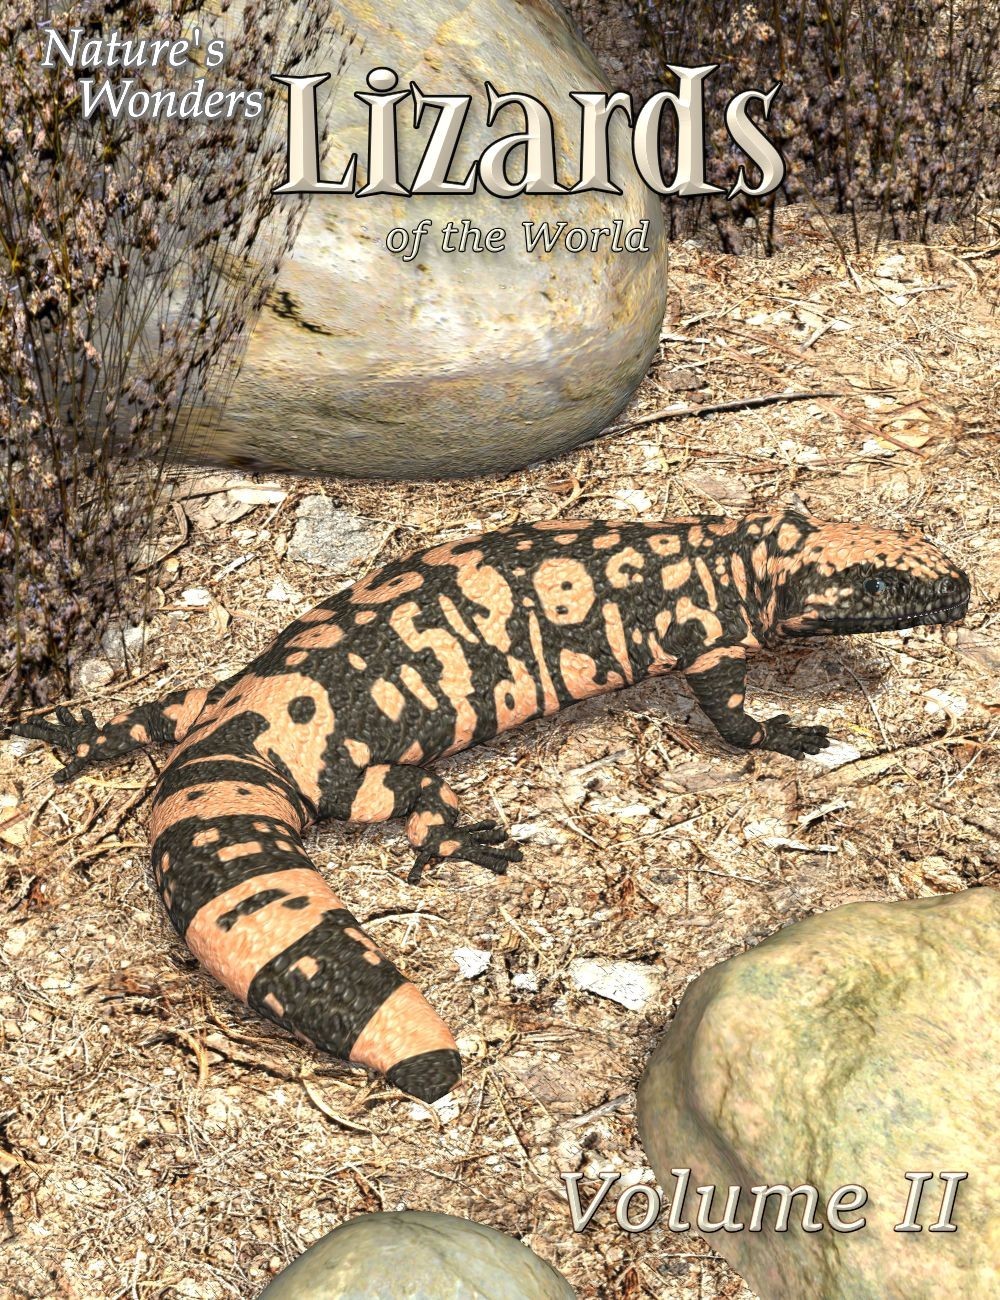 Nature’s Wonders Lizards of the World Vol. 2 动物 大自然奇观世界蜥蜴-大自然的奇迹世界蜥蜴世界卷。2动物大自然奇观世界蜥蜴